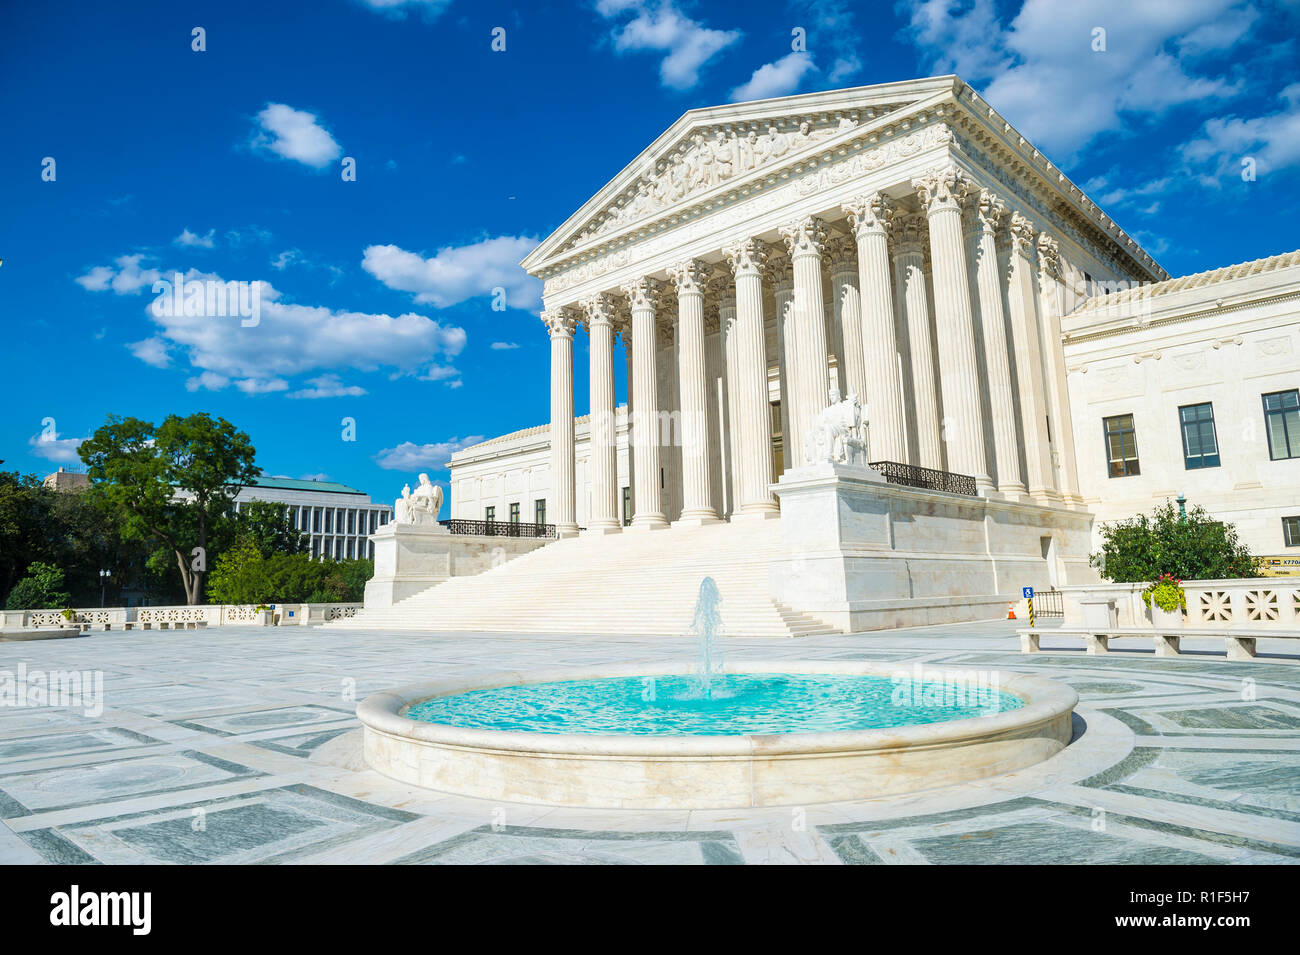 Luminoso vista panoramica del neo-classica facciata della Corte suprema degli Stati Uniti edificio dal plaza fontana sotto il cielo blu Foto Stock